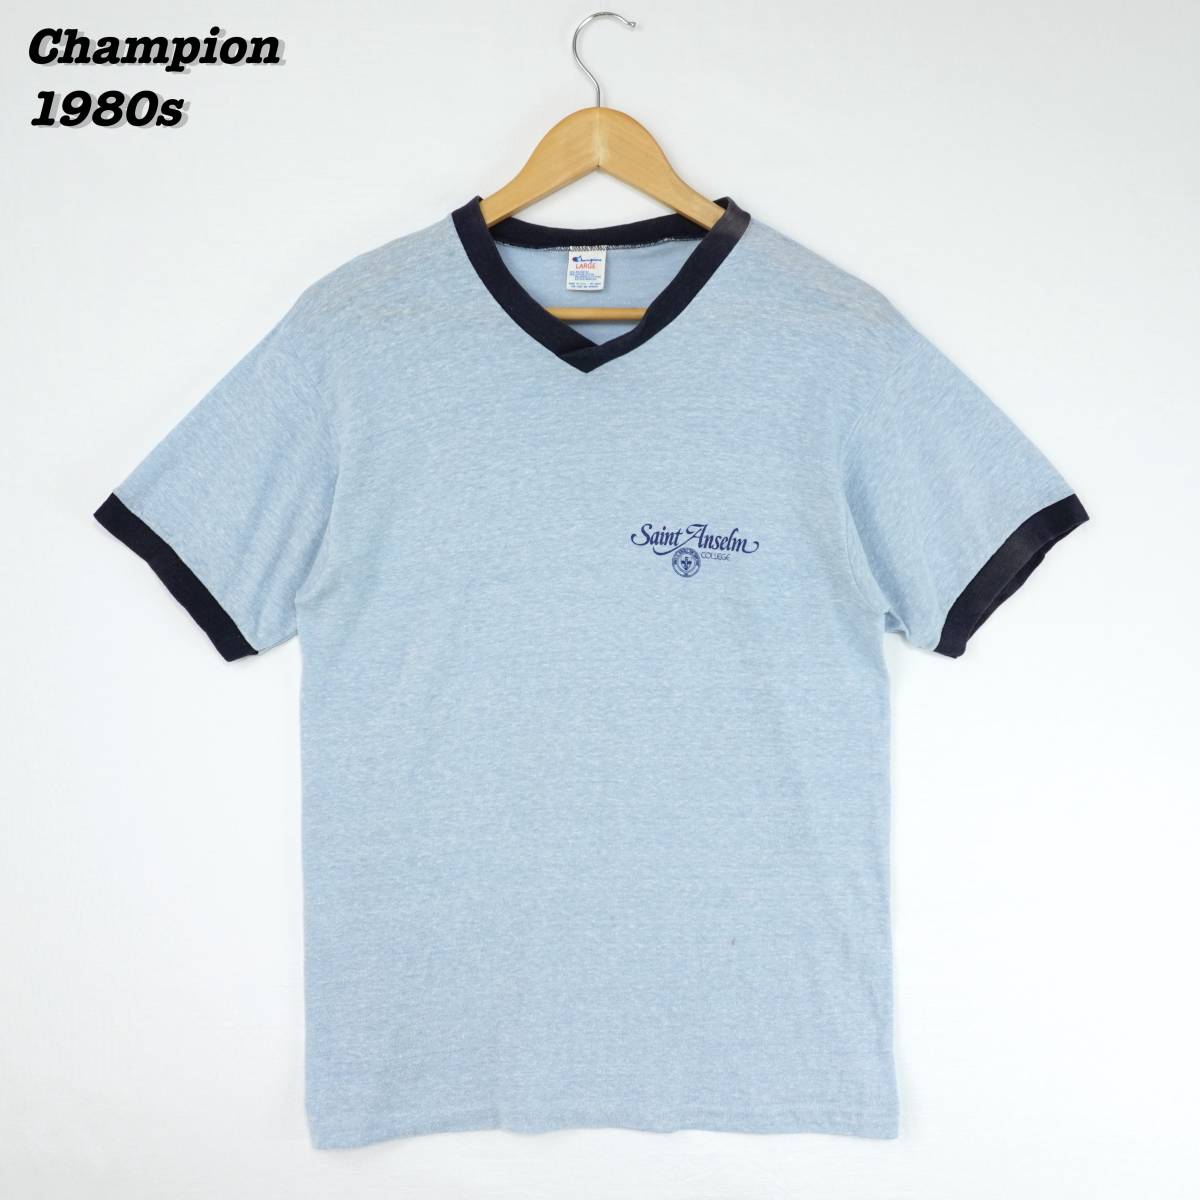 Champion T-Shirts 1980s LARGE T201 Vintage チャンピオン Tシャツ トリムTシャツ 1980年代 ヴィンテージ